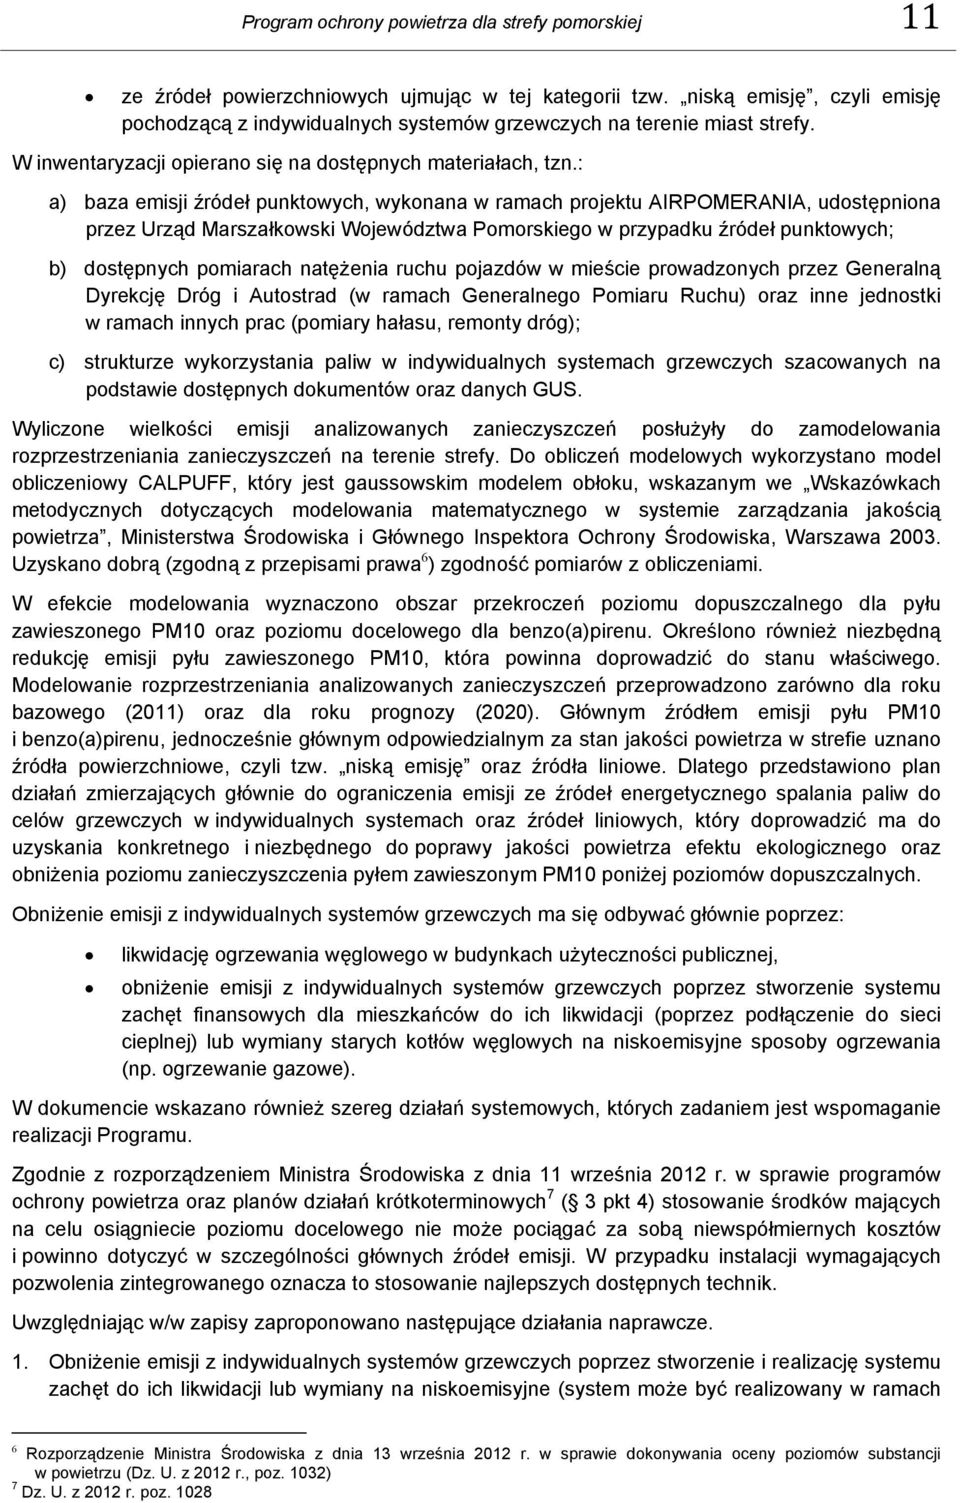 : a) baza emisji źródeł punktowych, wykonana w ramach projektu AIRPOMERANIA, udostępniona przez Urząd Marszałkowski Województwa Pomorskiego w przypadku źródeł punktowych; b) dostępnych pomiarach